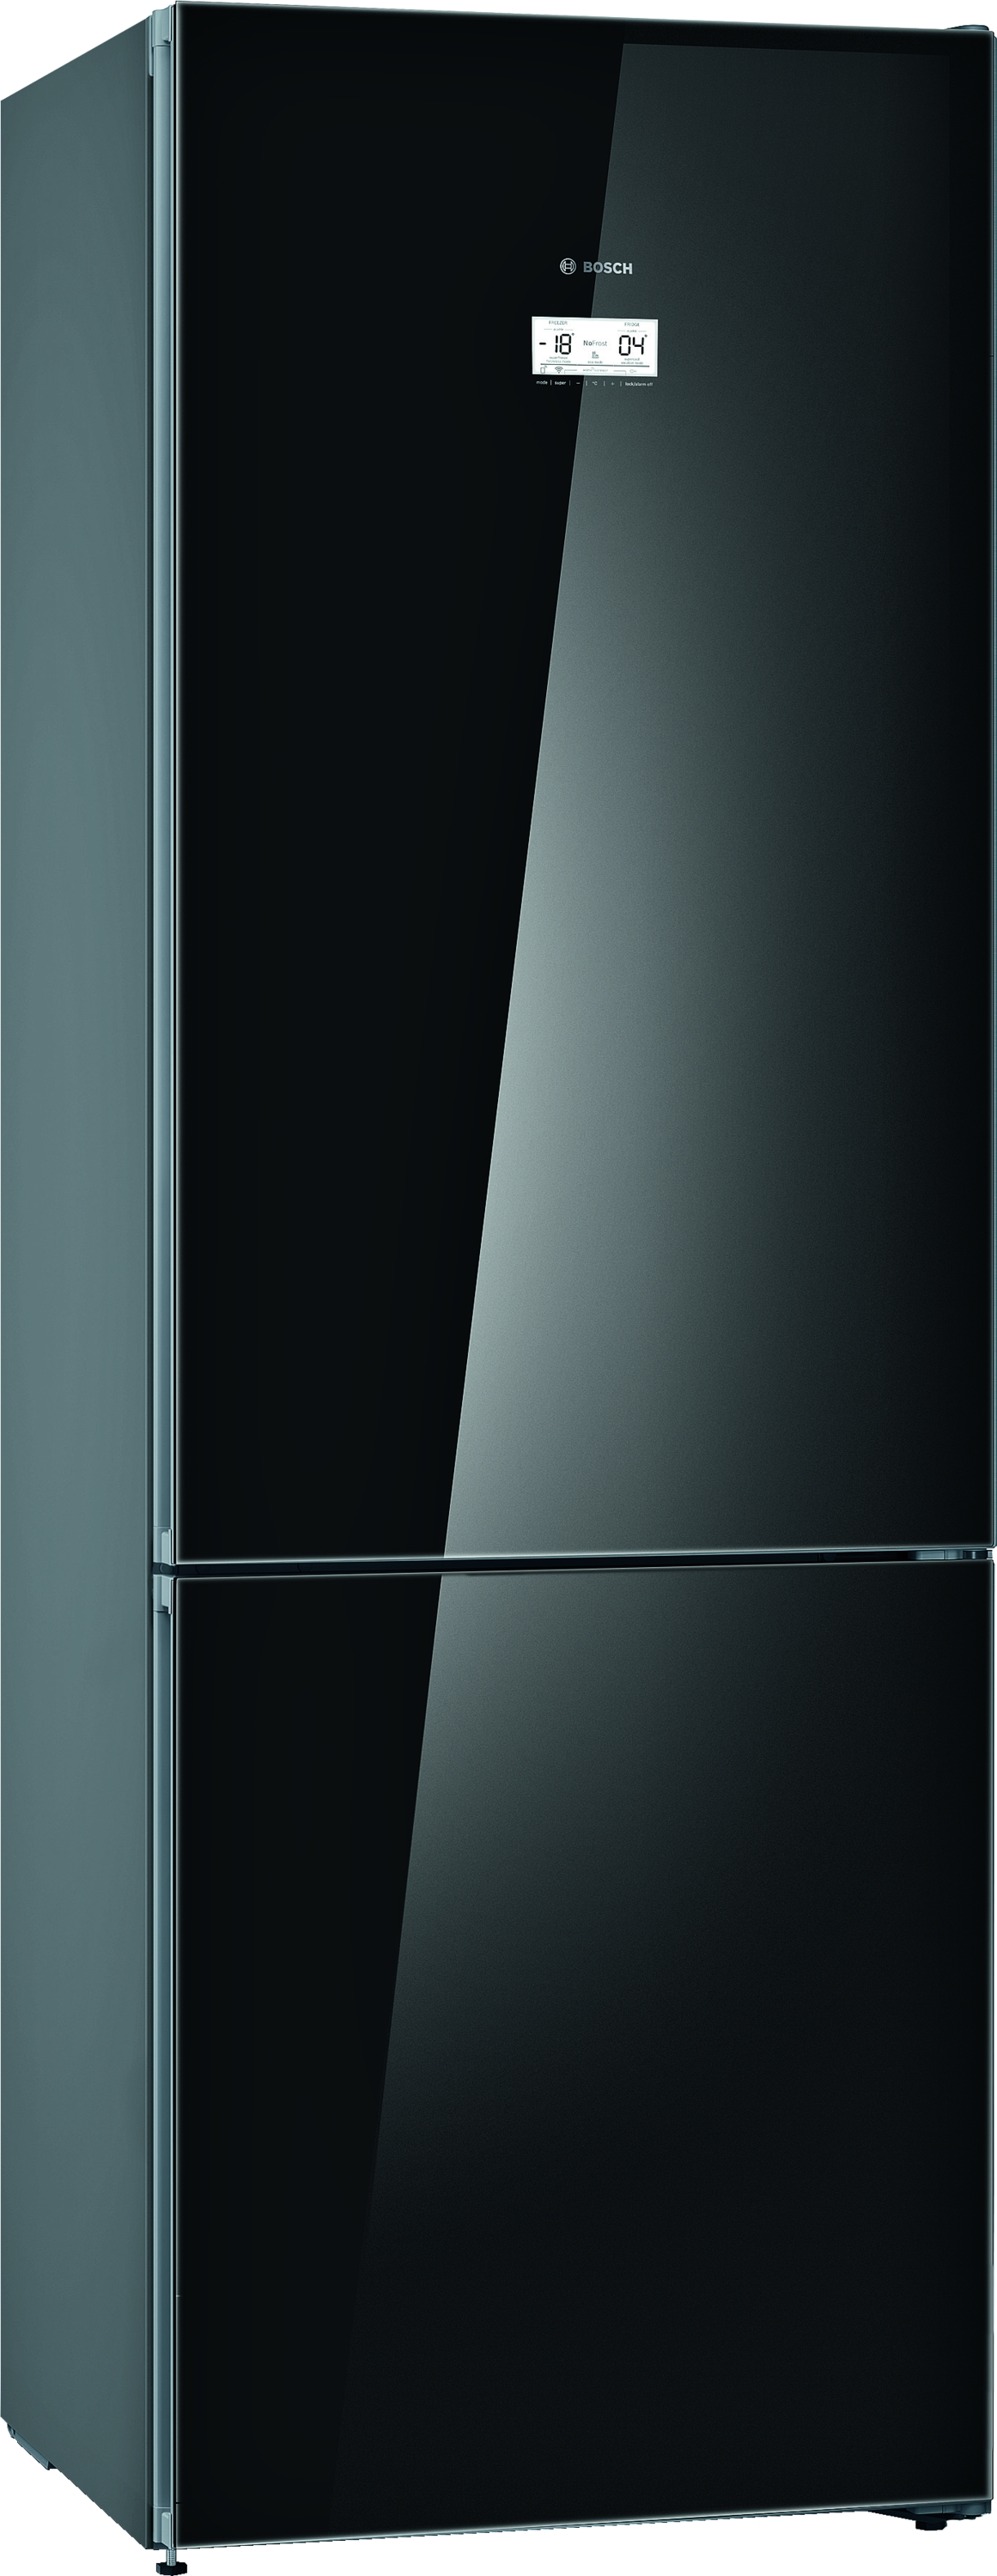 KGN49LBEA ,Combină frigorifică independentă, sticla , 203 x 70 cm Black, 5 ANI GARANTIE. Clasa Energetica E